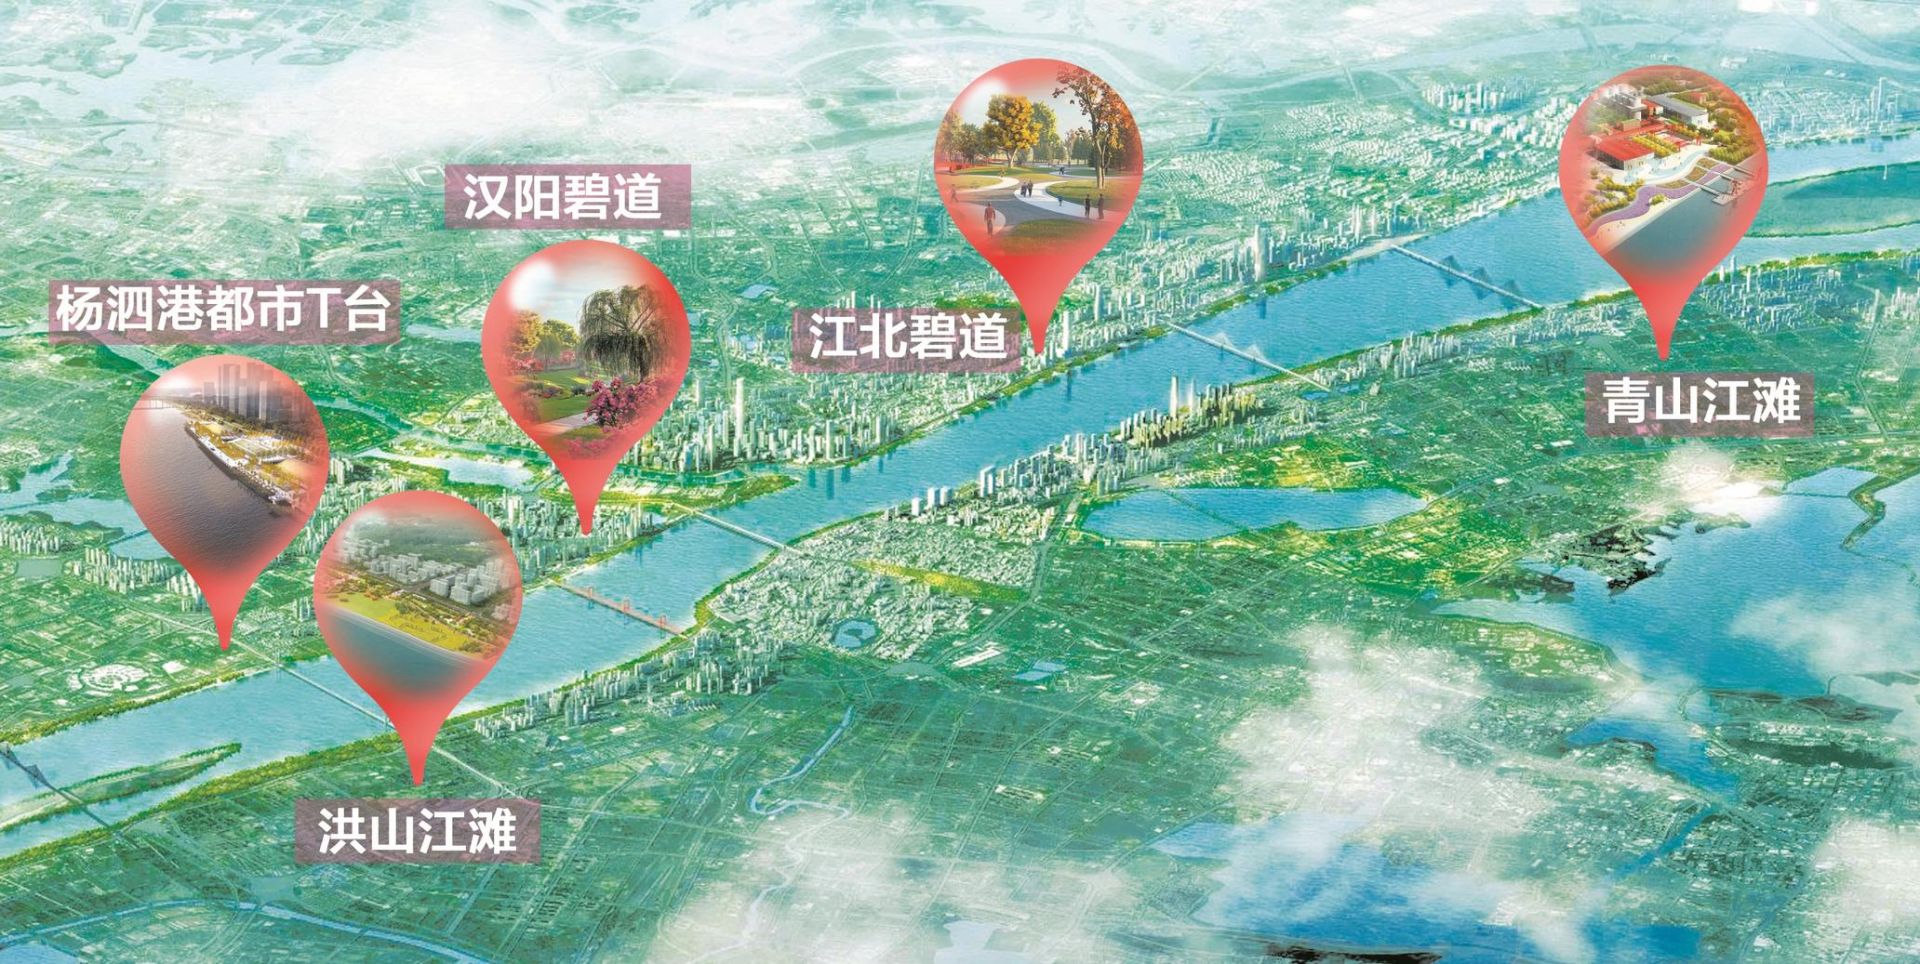 武汉启动百里长江生态廊道建设 打造全贯通碧道慢行网络[图](图1)